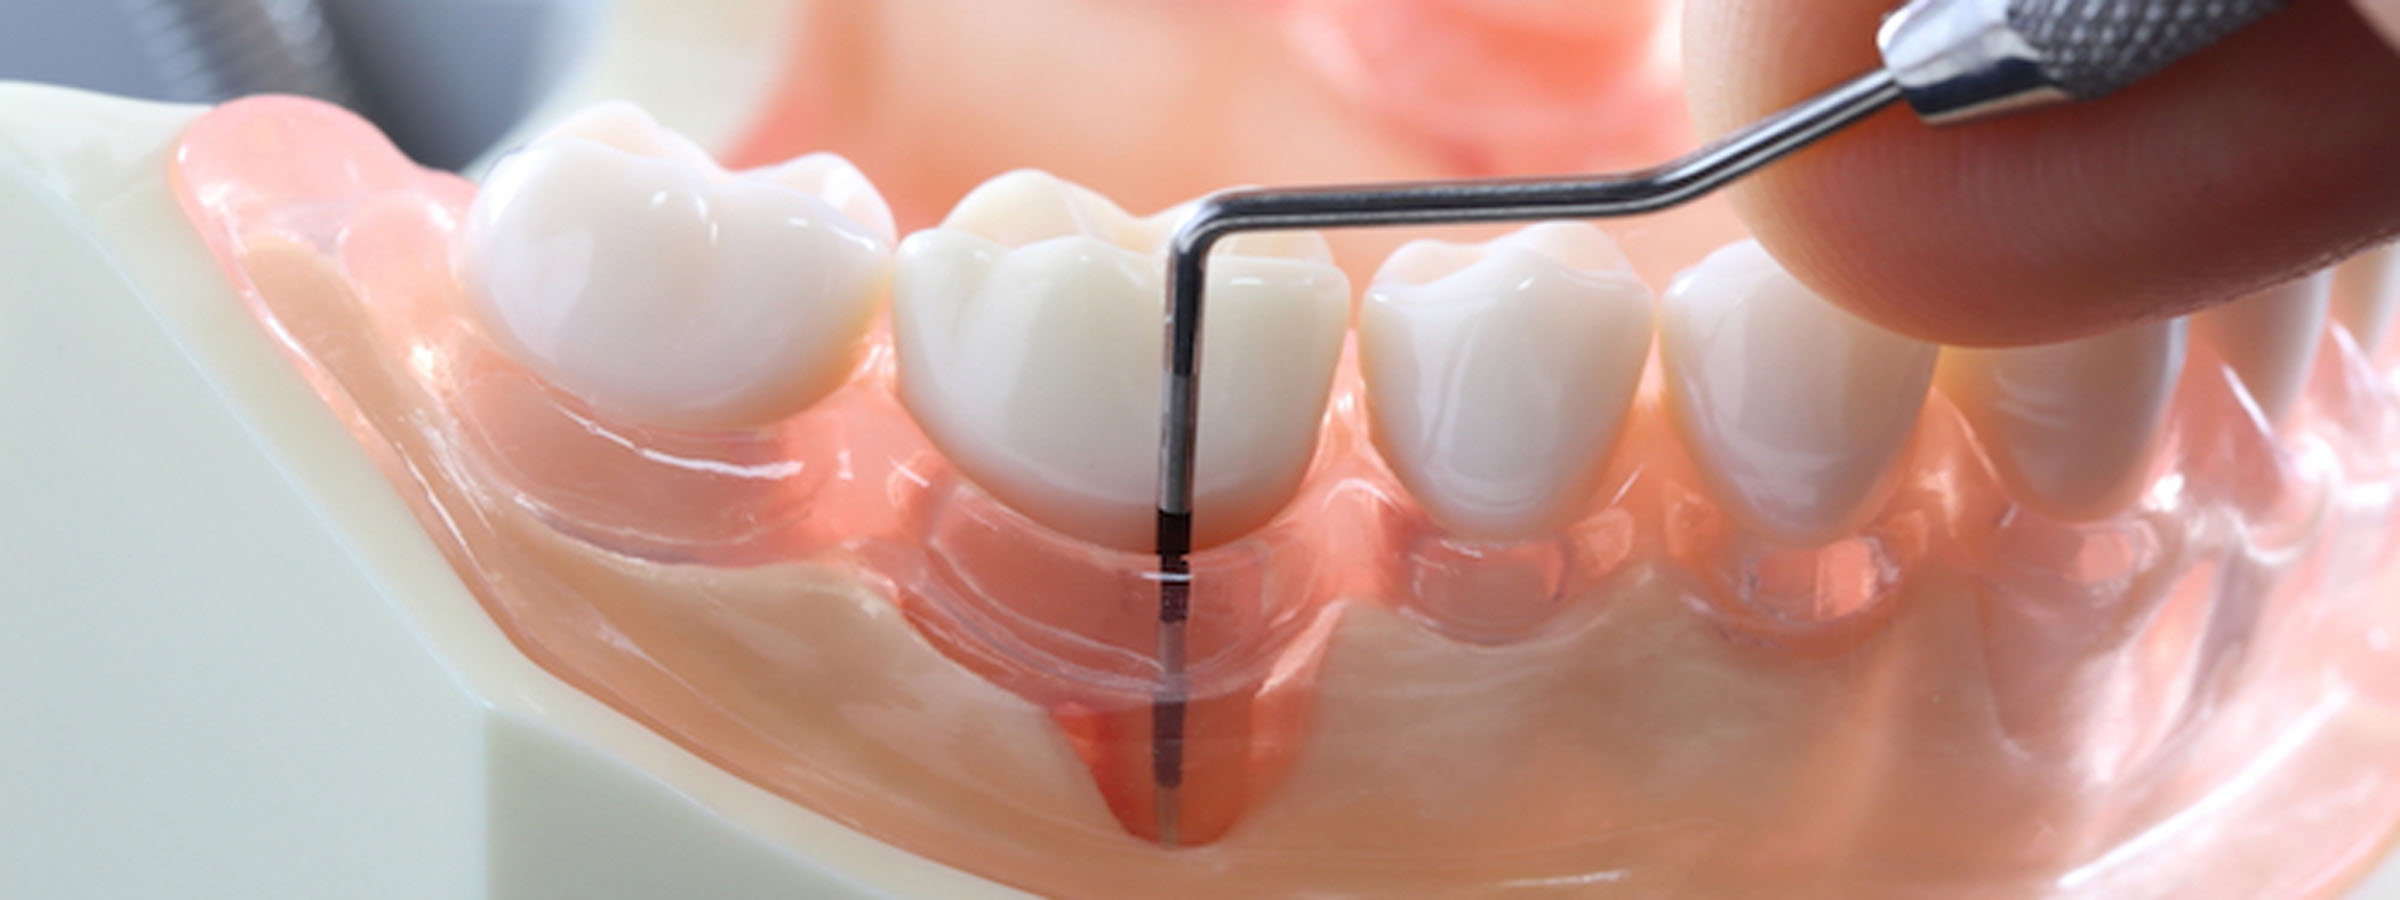 歯周デトックス療法